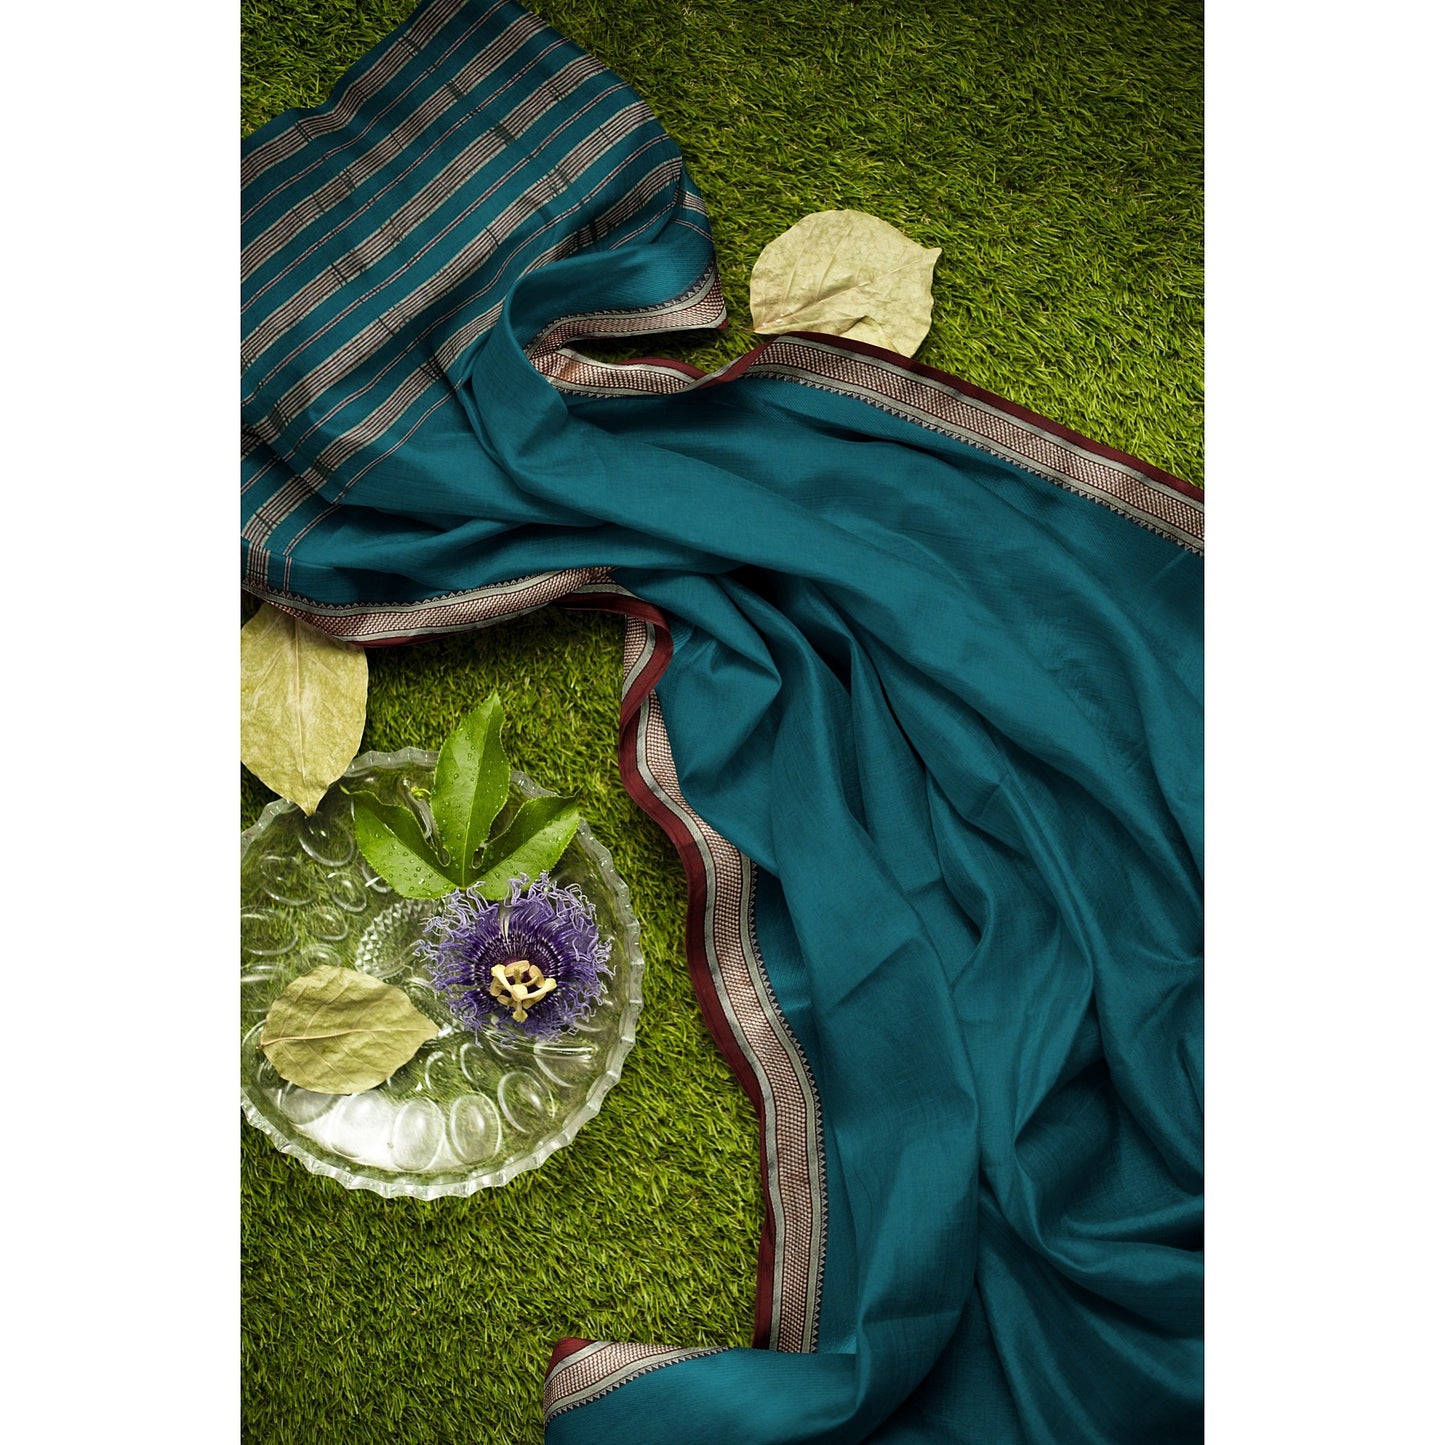 Prasa - Pure Cotton Saree - Teal Green